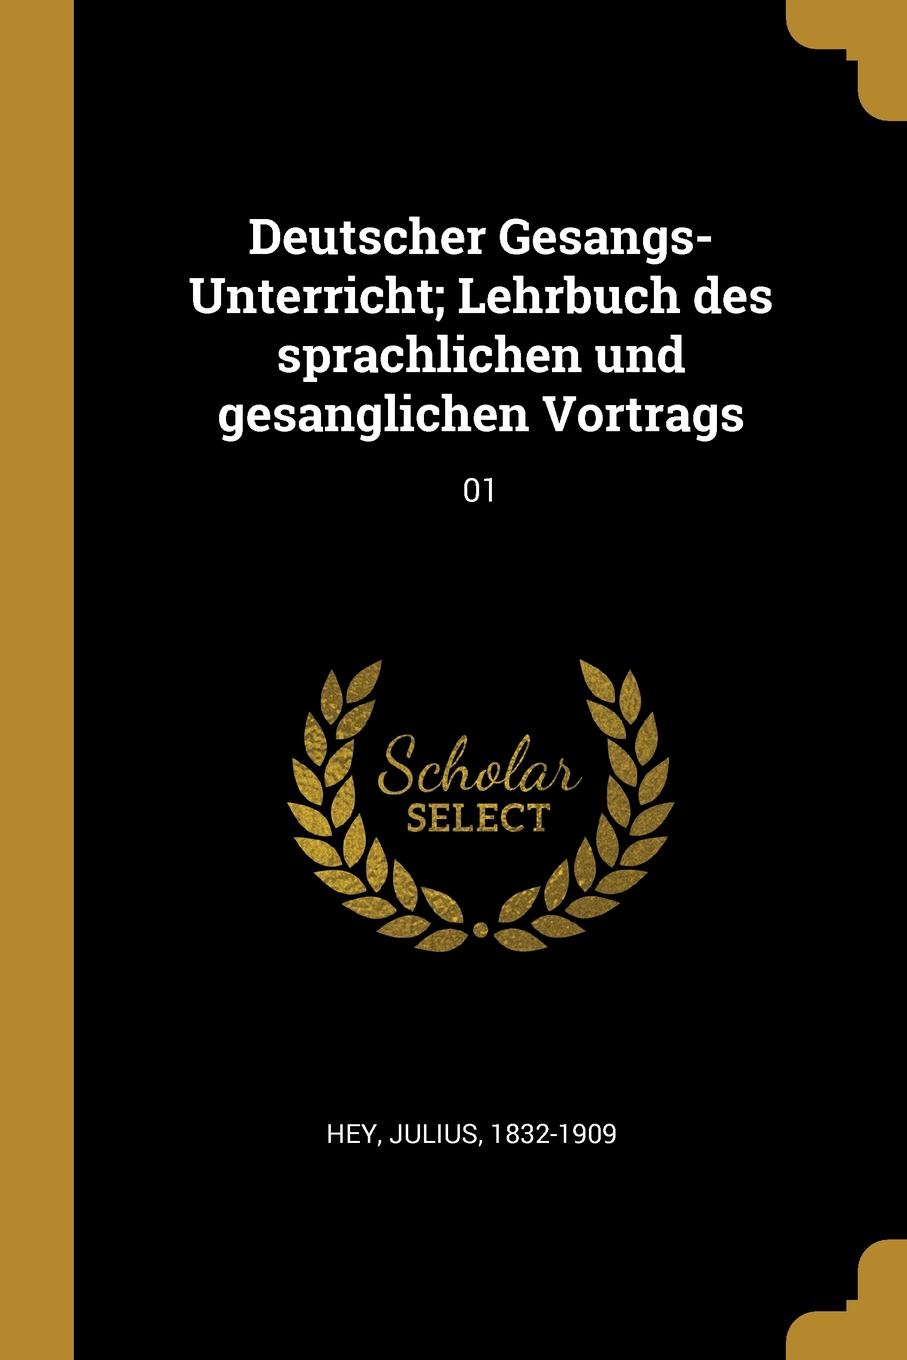 Deutscher Gesangs-Unterricht; Lehrbuch des sprachlichen und gesanglichen Vortrags. 01